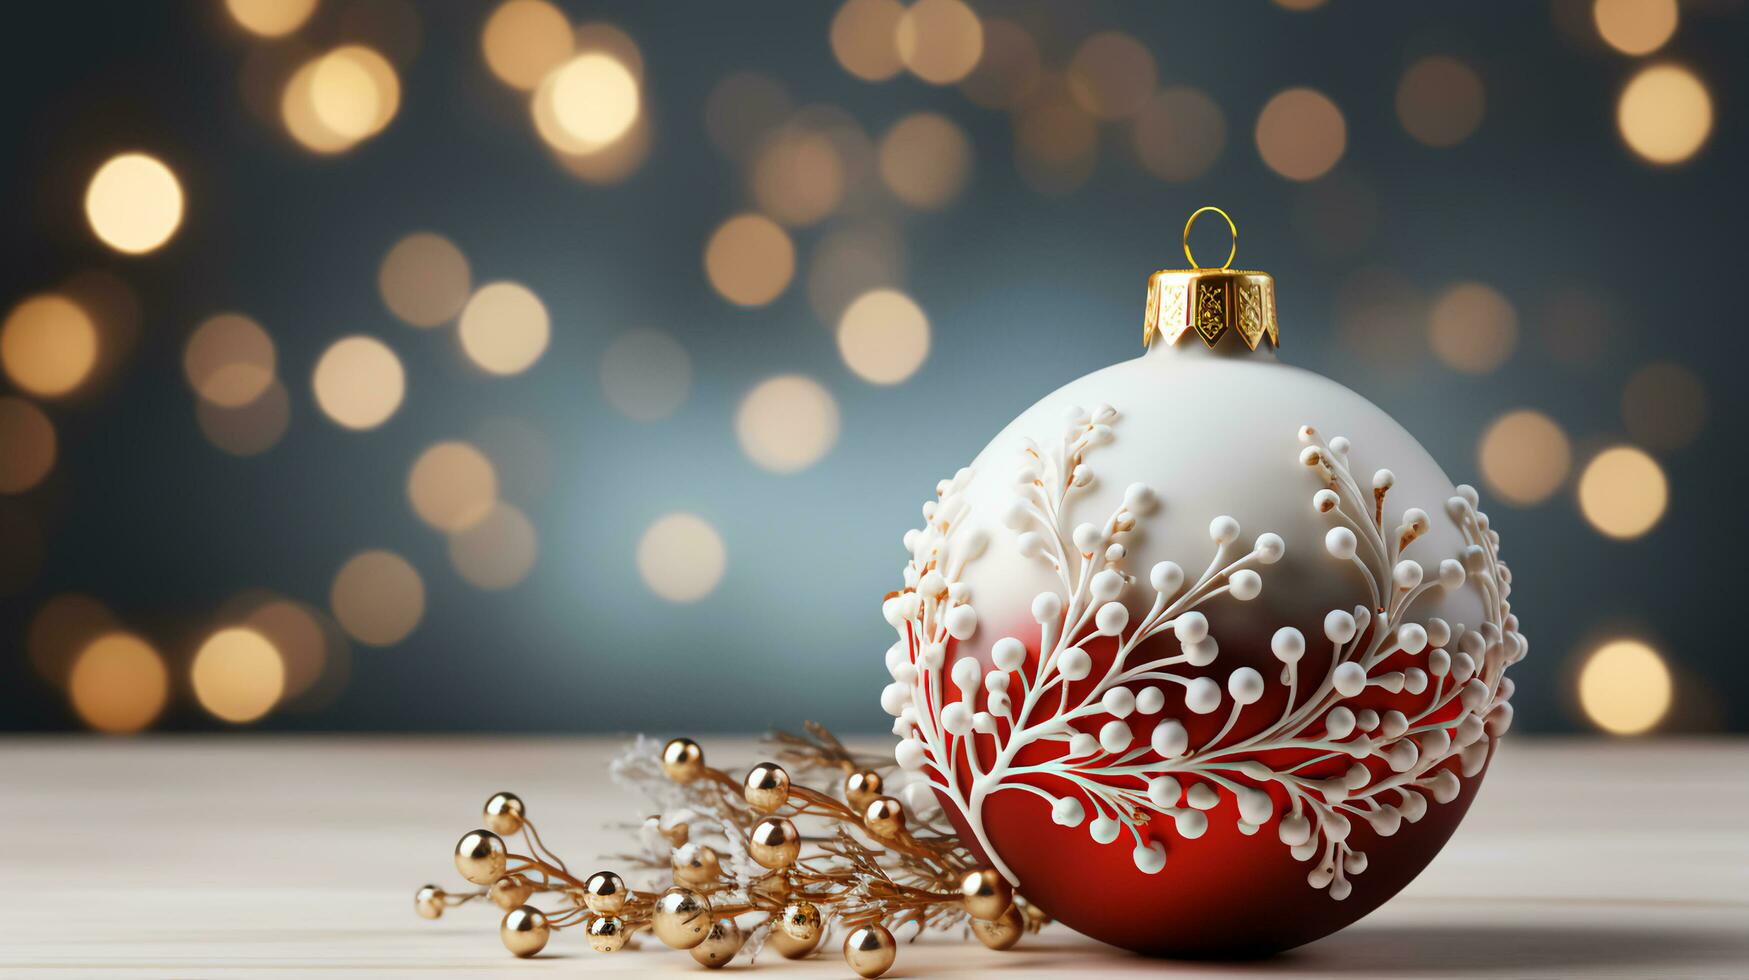 magnifique Noël arbre jouets et décorations pour Nouveau année et Noël photo